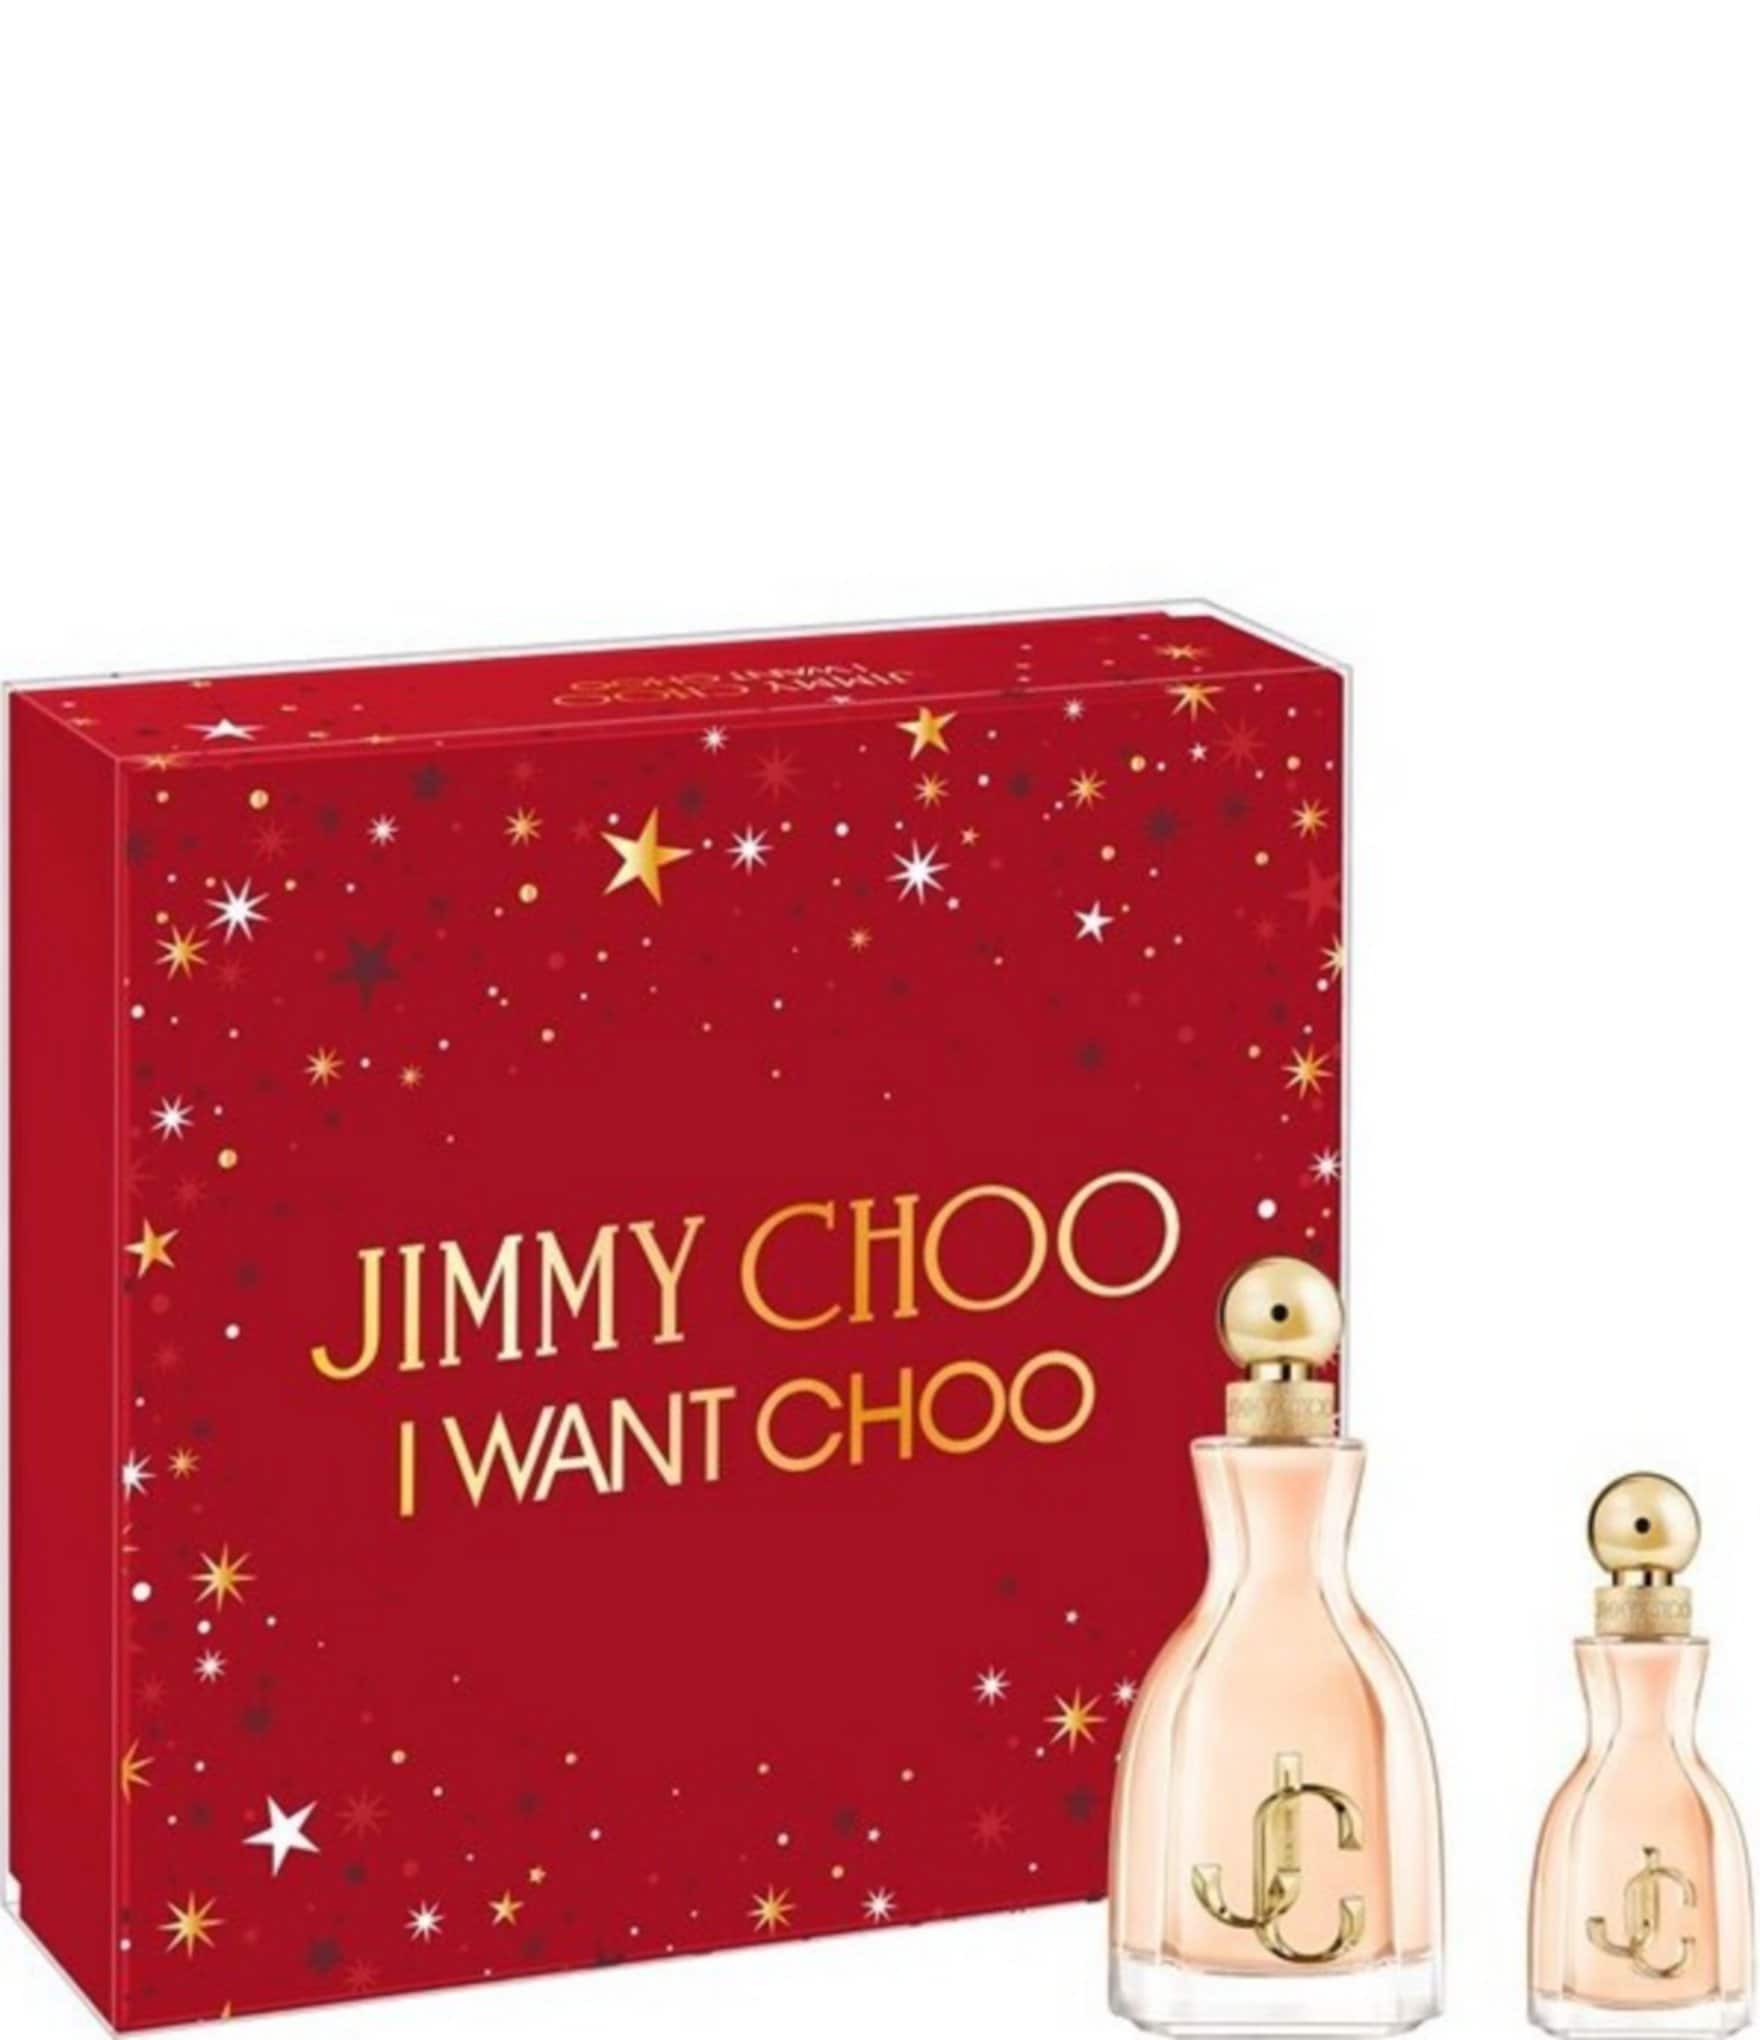 Buy 10ml Jimmy Choo Cologne Sample perfume for Men